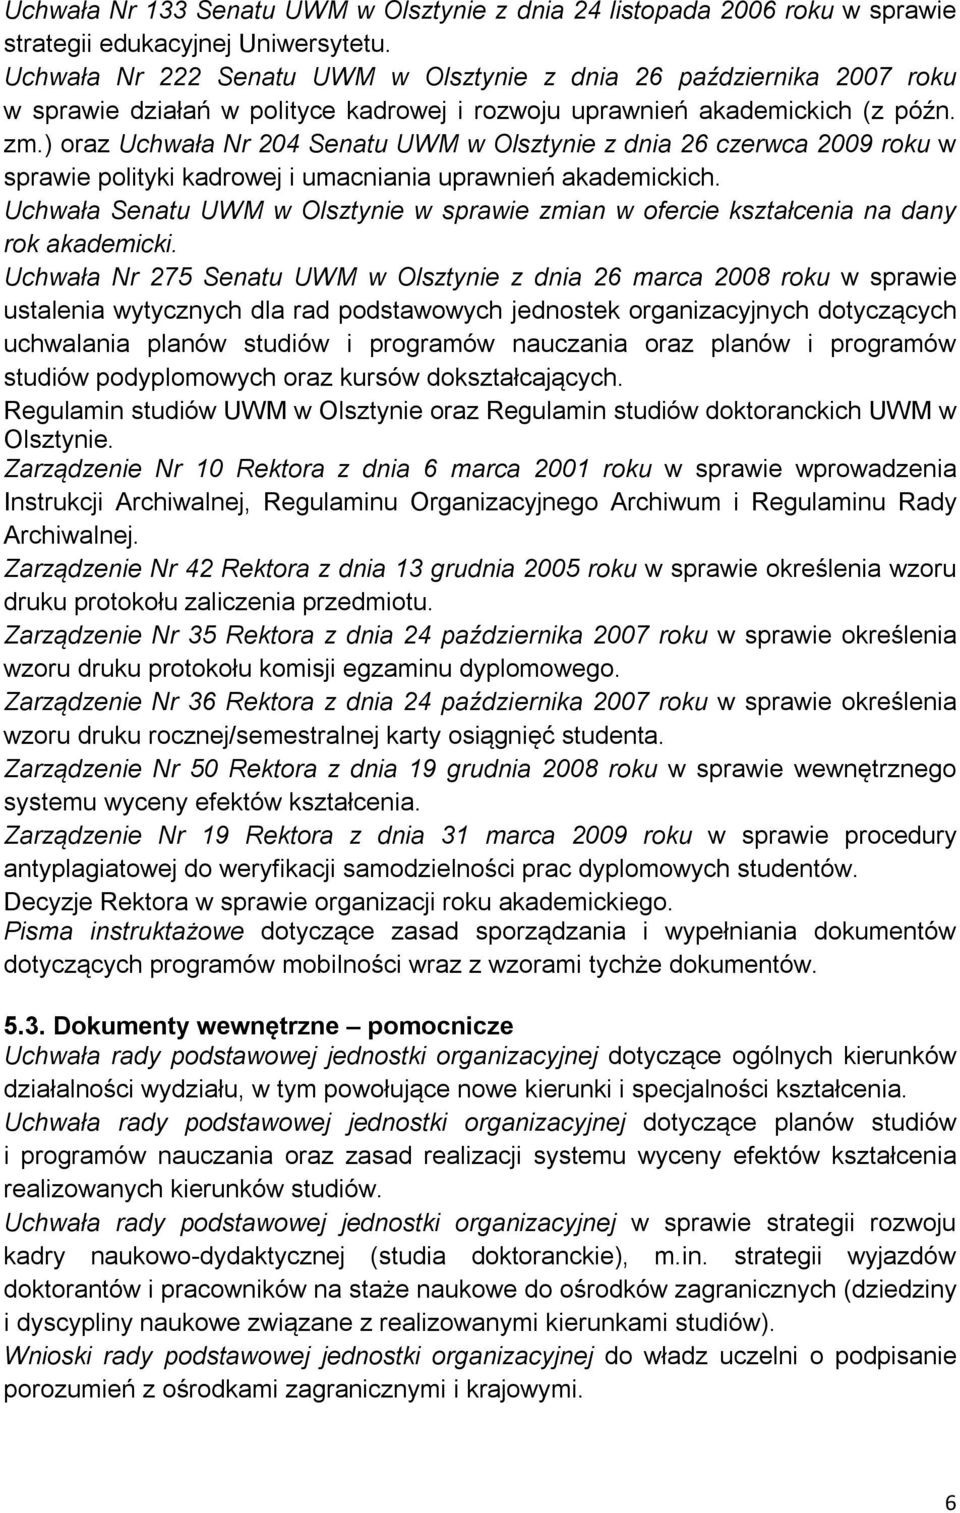 ) oraz Uchwała Nr 204 Senatu UWM w Olsztynie z dnia 26 czerwca 2009 roku w sprawie polityki kadrowej i umacniania uprawnień akademickich.